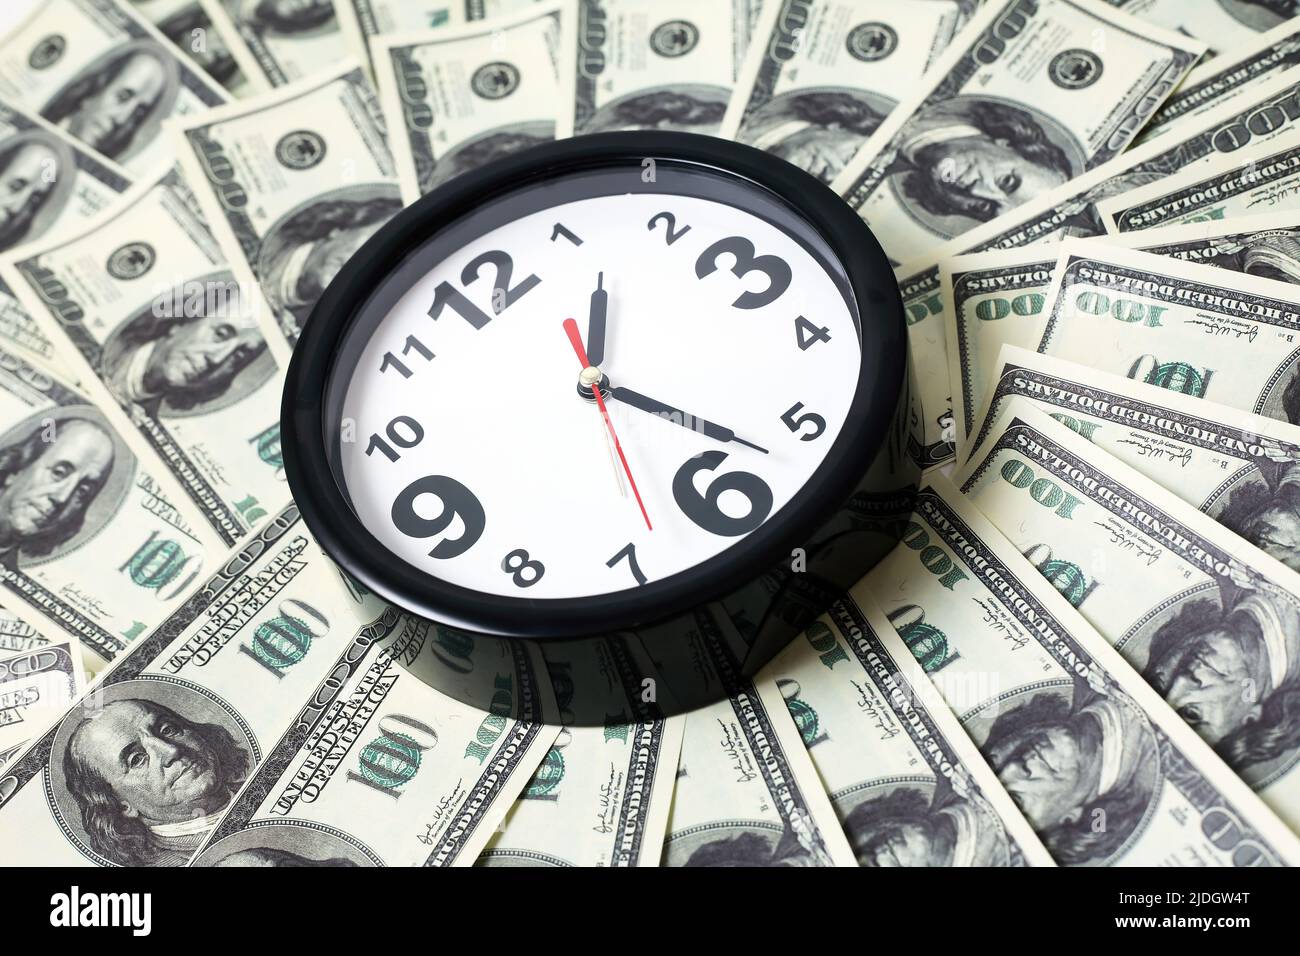 El tiempo es dinero. Reloj despertador moderno con fondo USA Cash Foto de stock